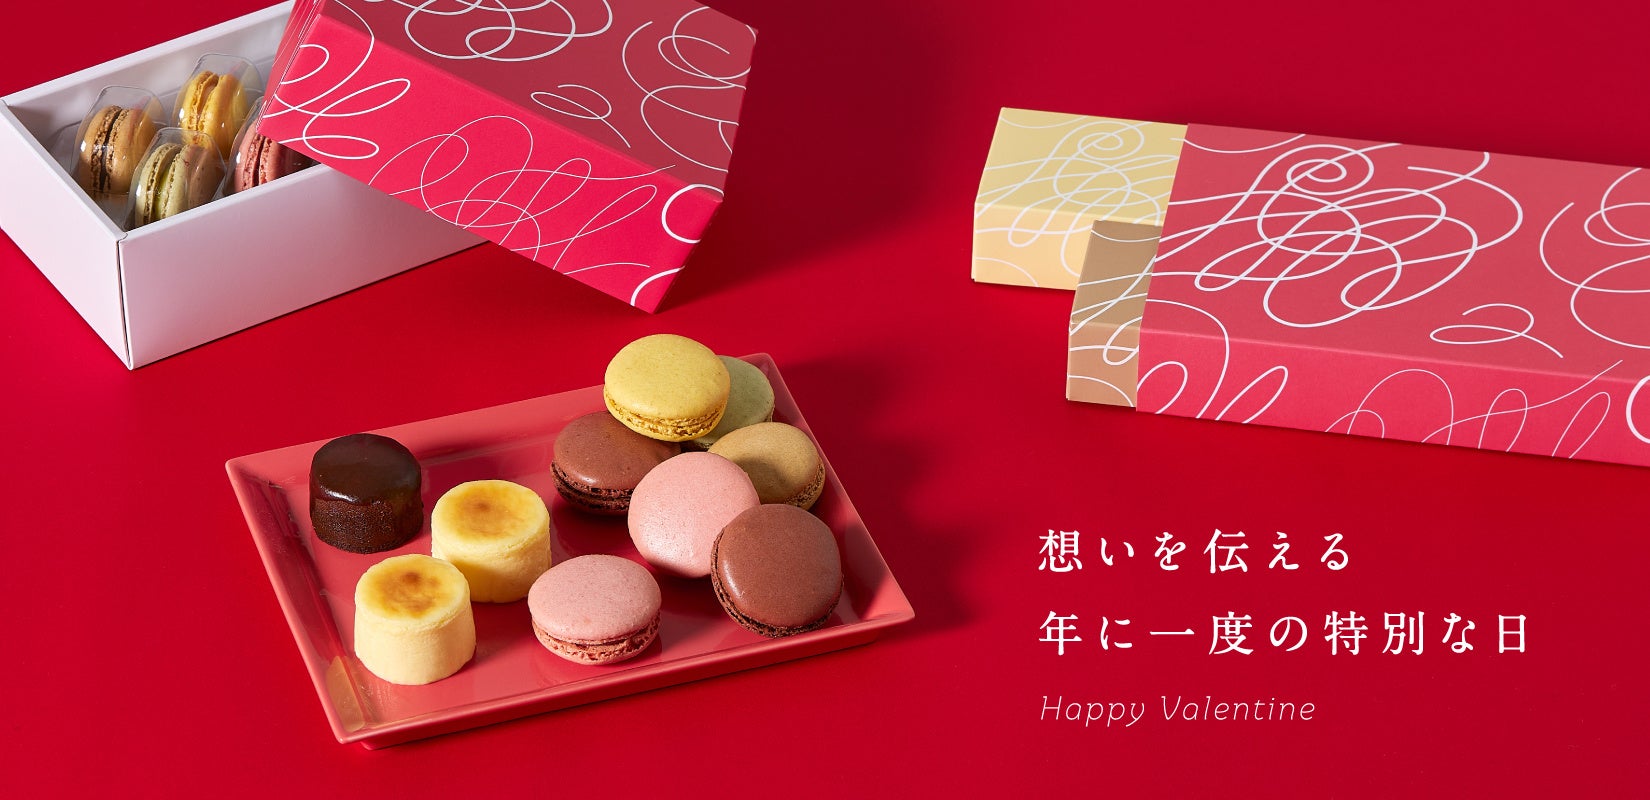 札幌の洋菓子【きのとや】で特別なバレンタインを。限定スイーツが続々登場。